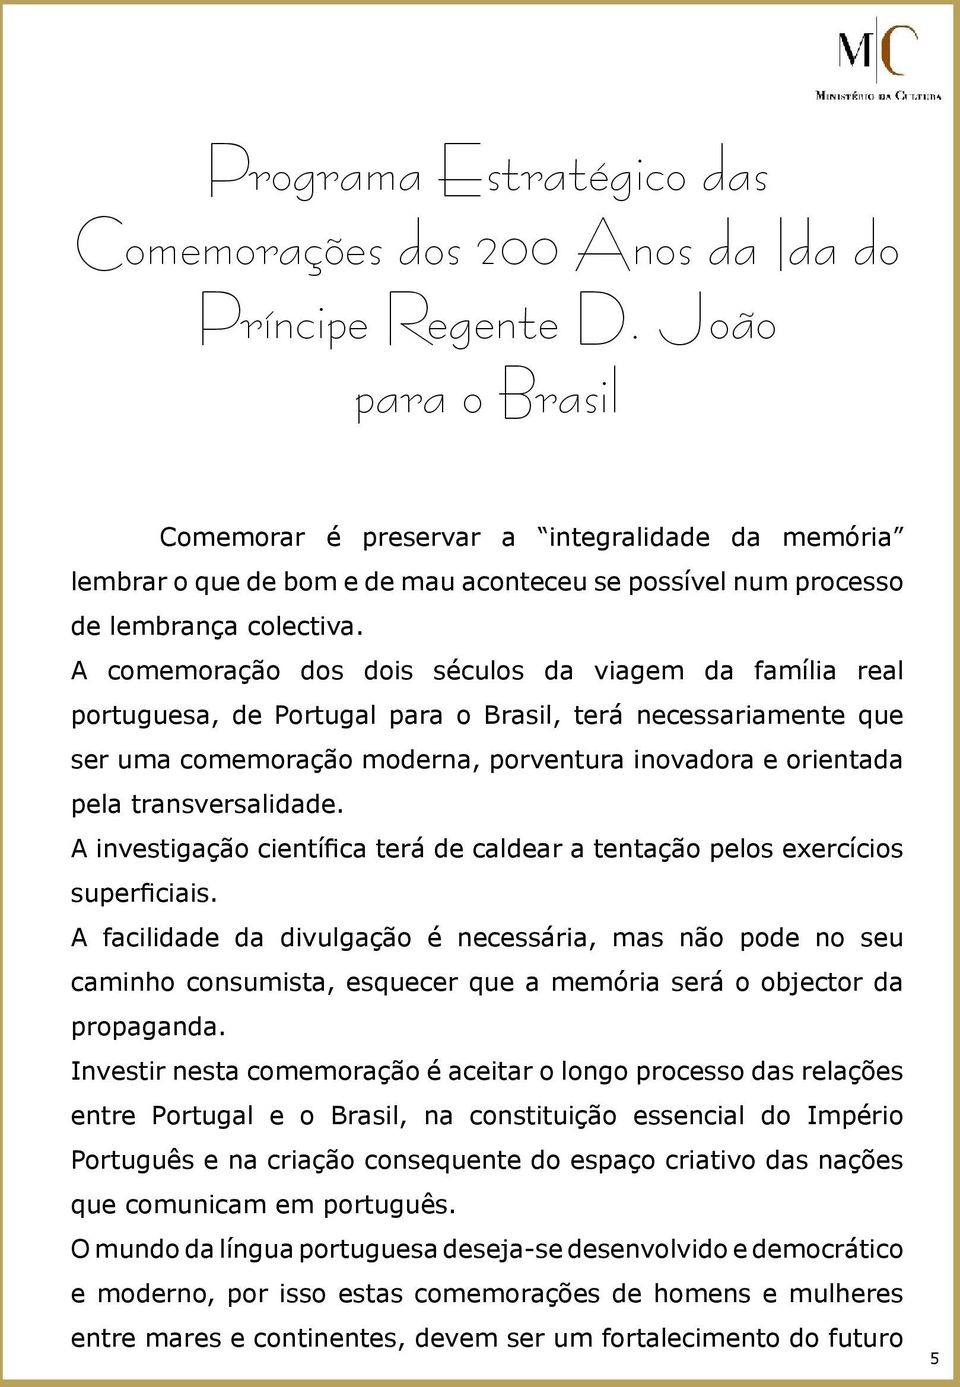 A comemoração dos dois séculos da viagem da família real portuguesa, de Portugal para o Brasil, terá necessariamente que ser uma comemoração moderna, porventura inovadora e orientada pela